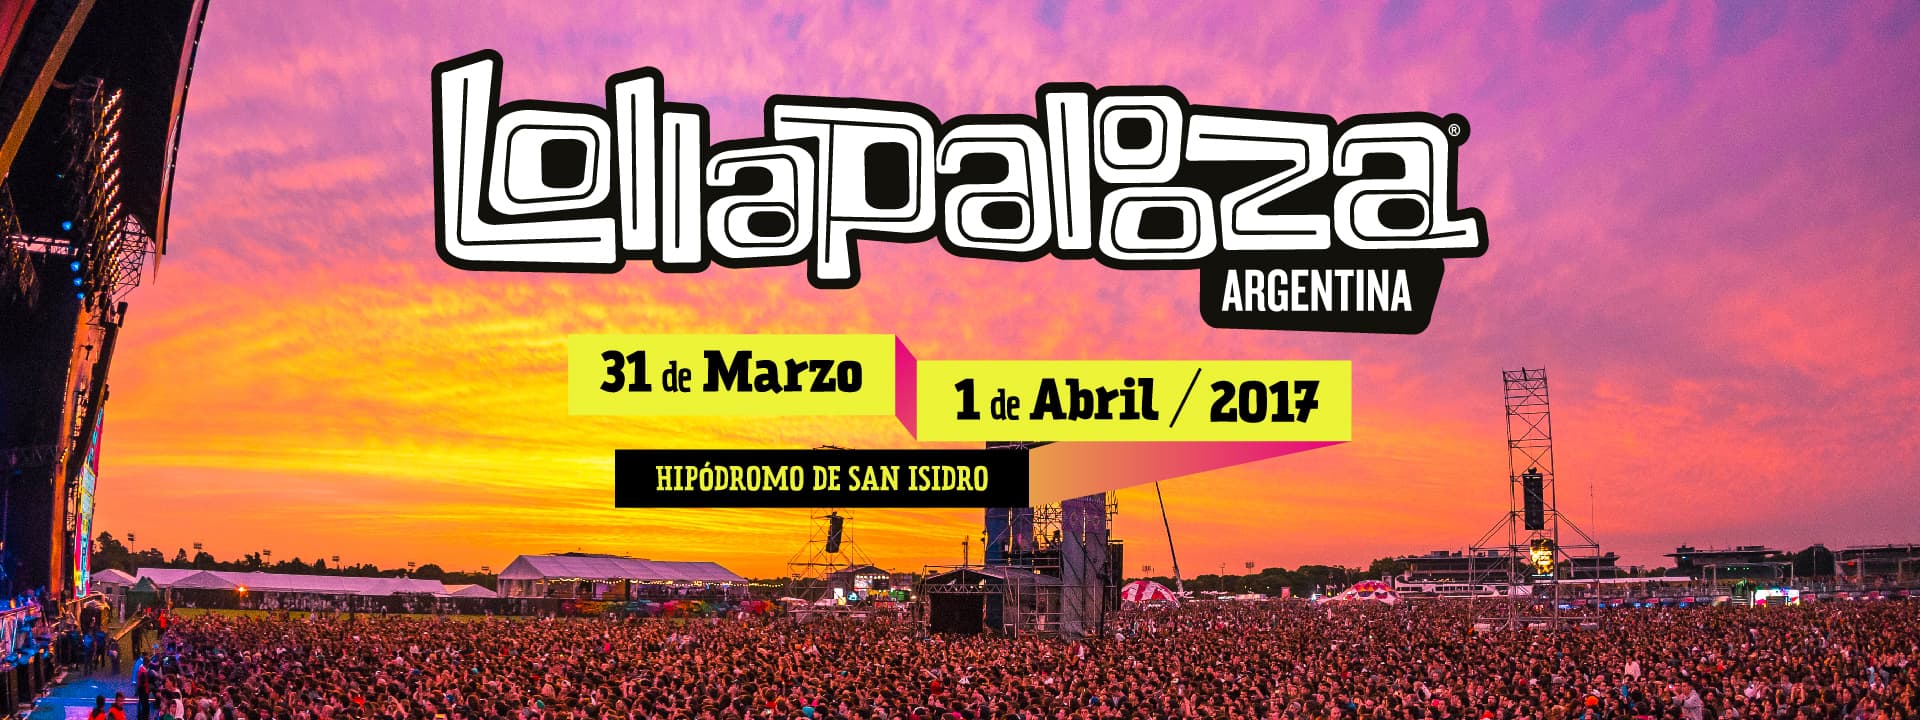 Lollapalooza Argentina 2017: Todos los horarios.